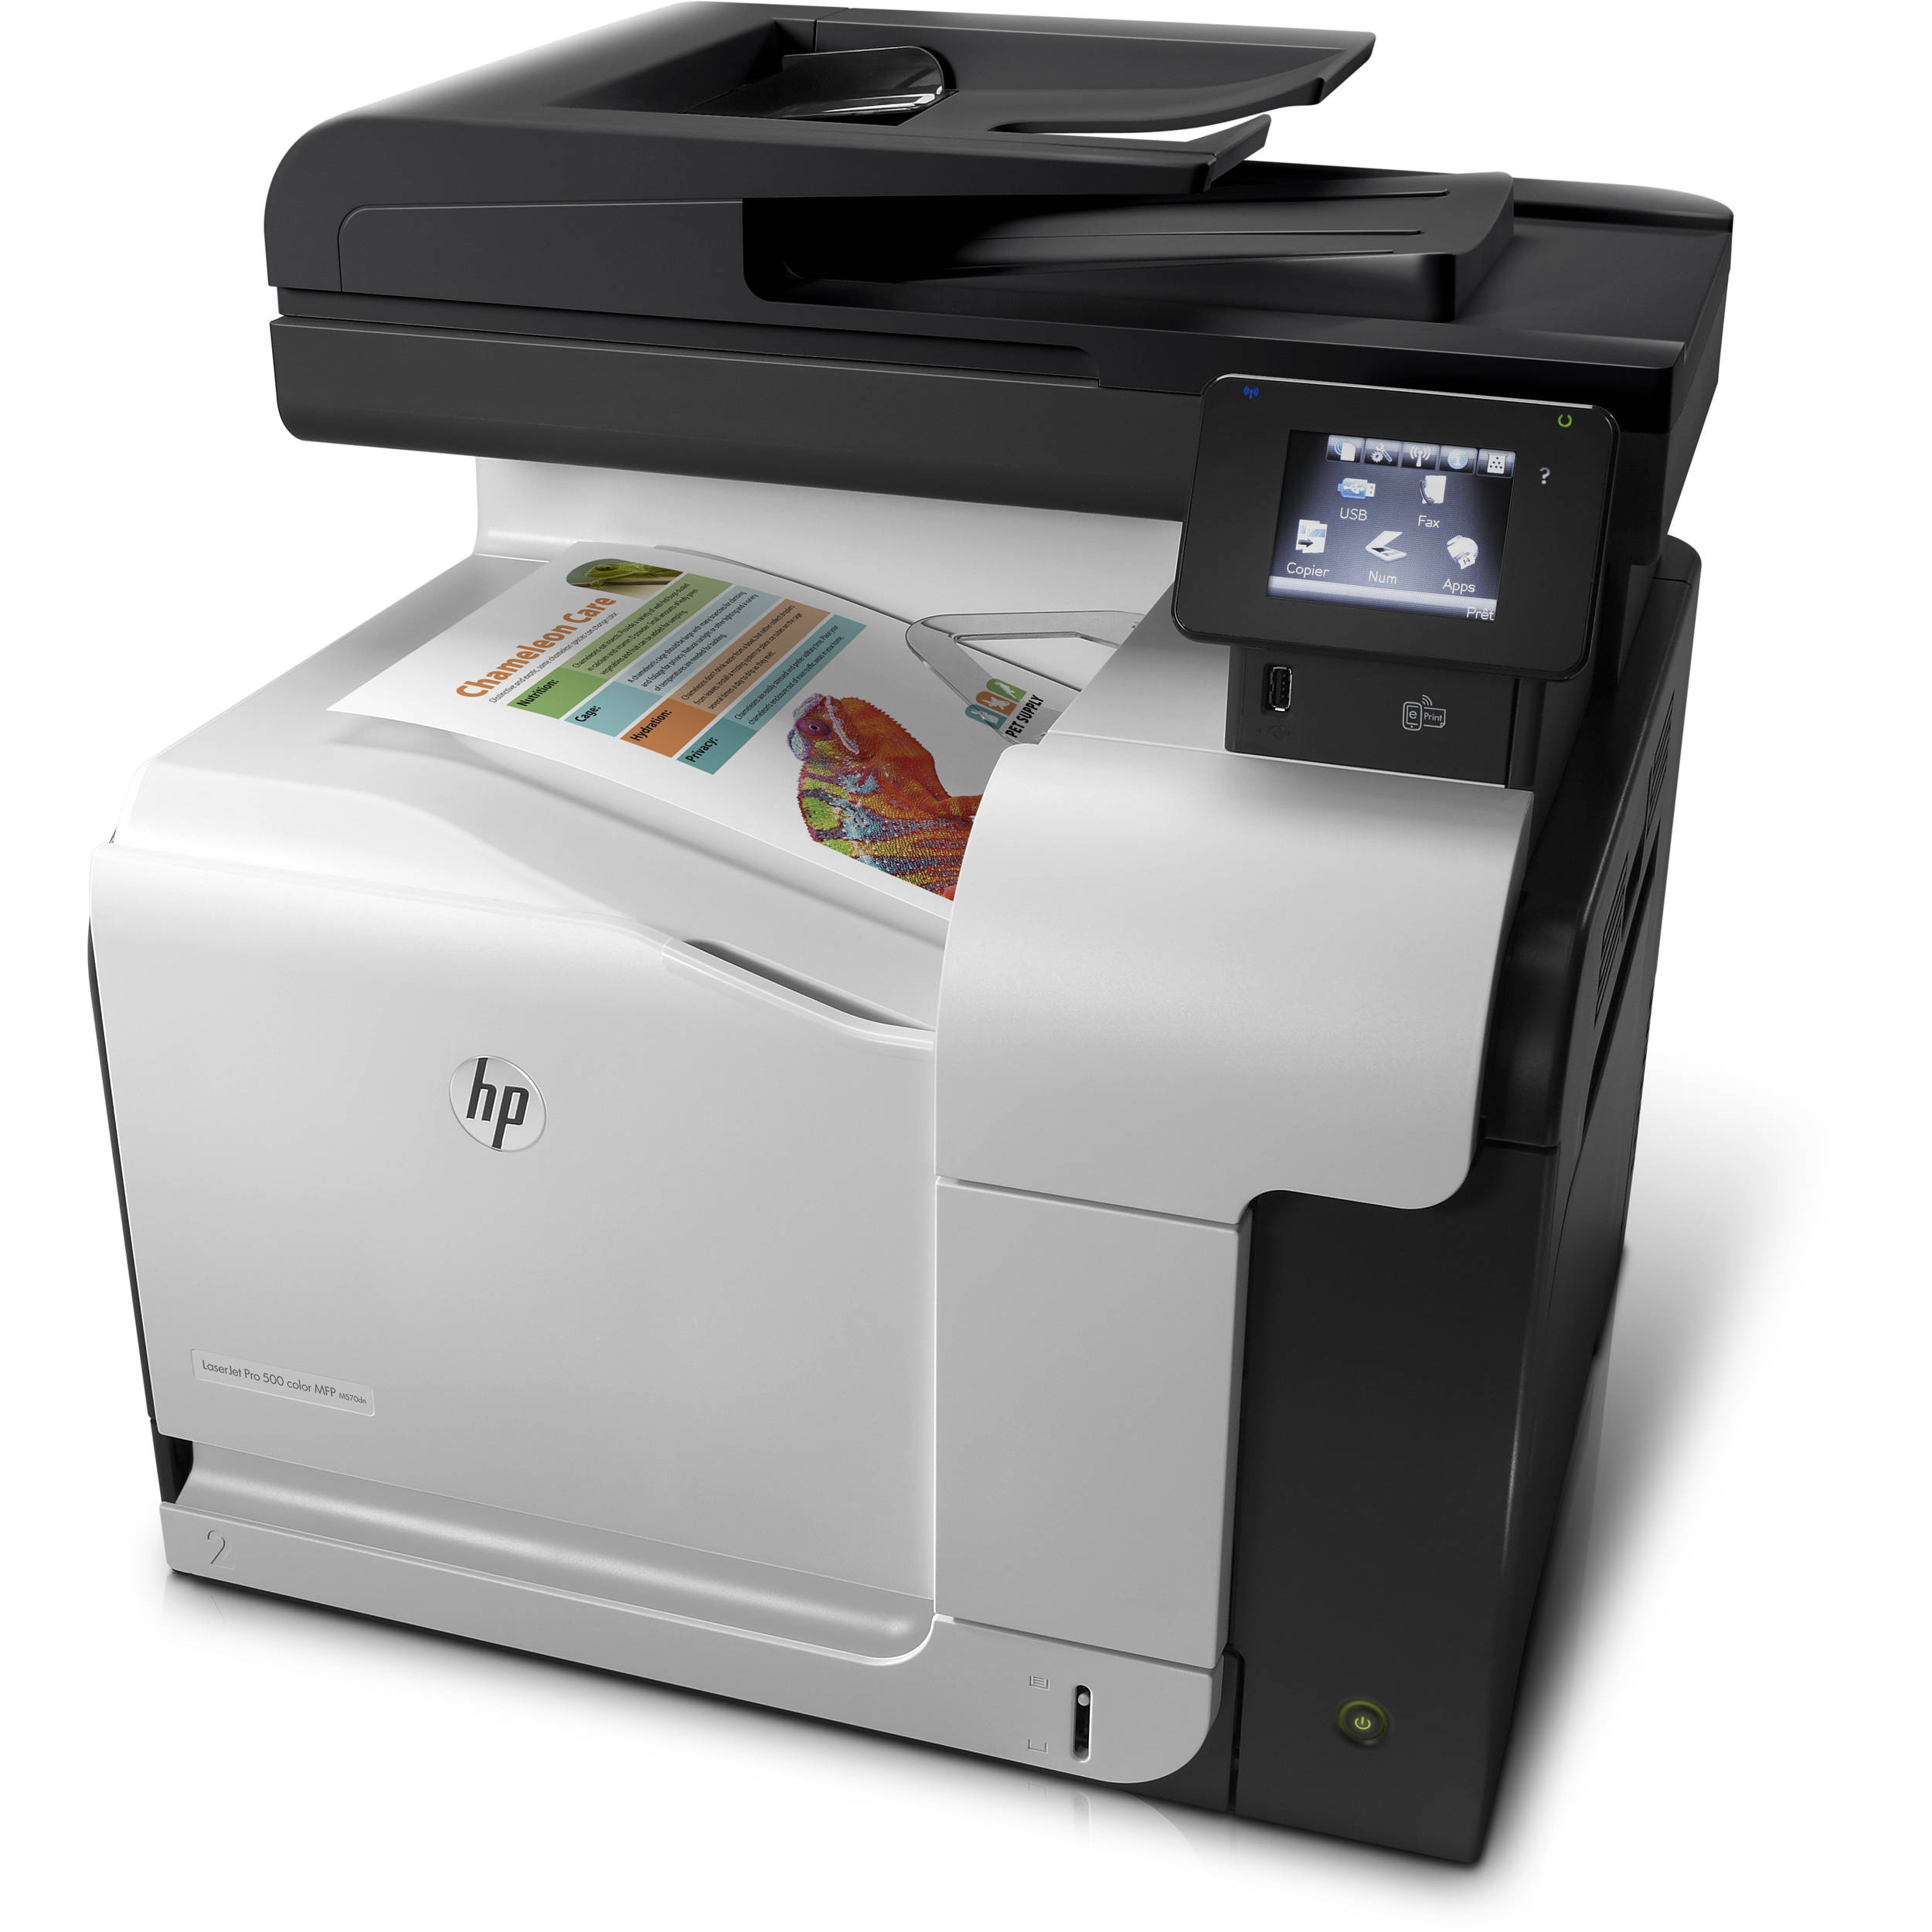 Hp Laserjet Pro Color M Dn Printer Copierguide | Hot Sex Picture